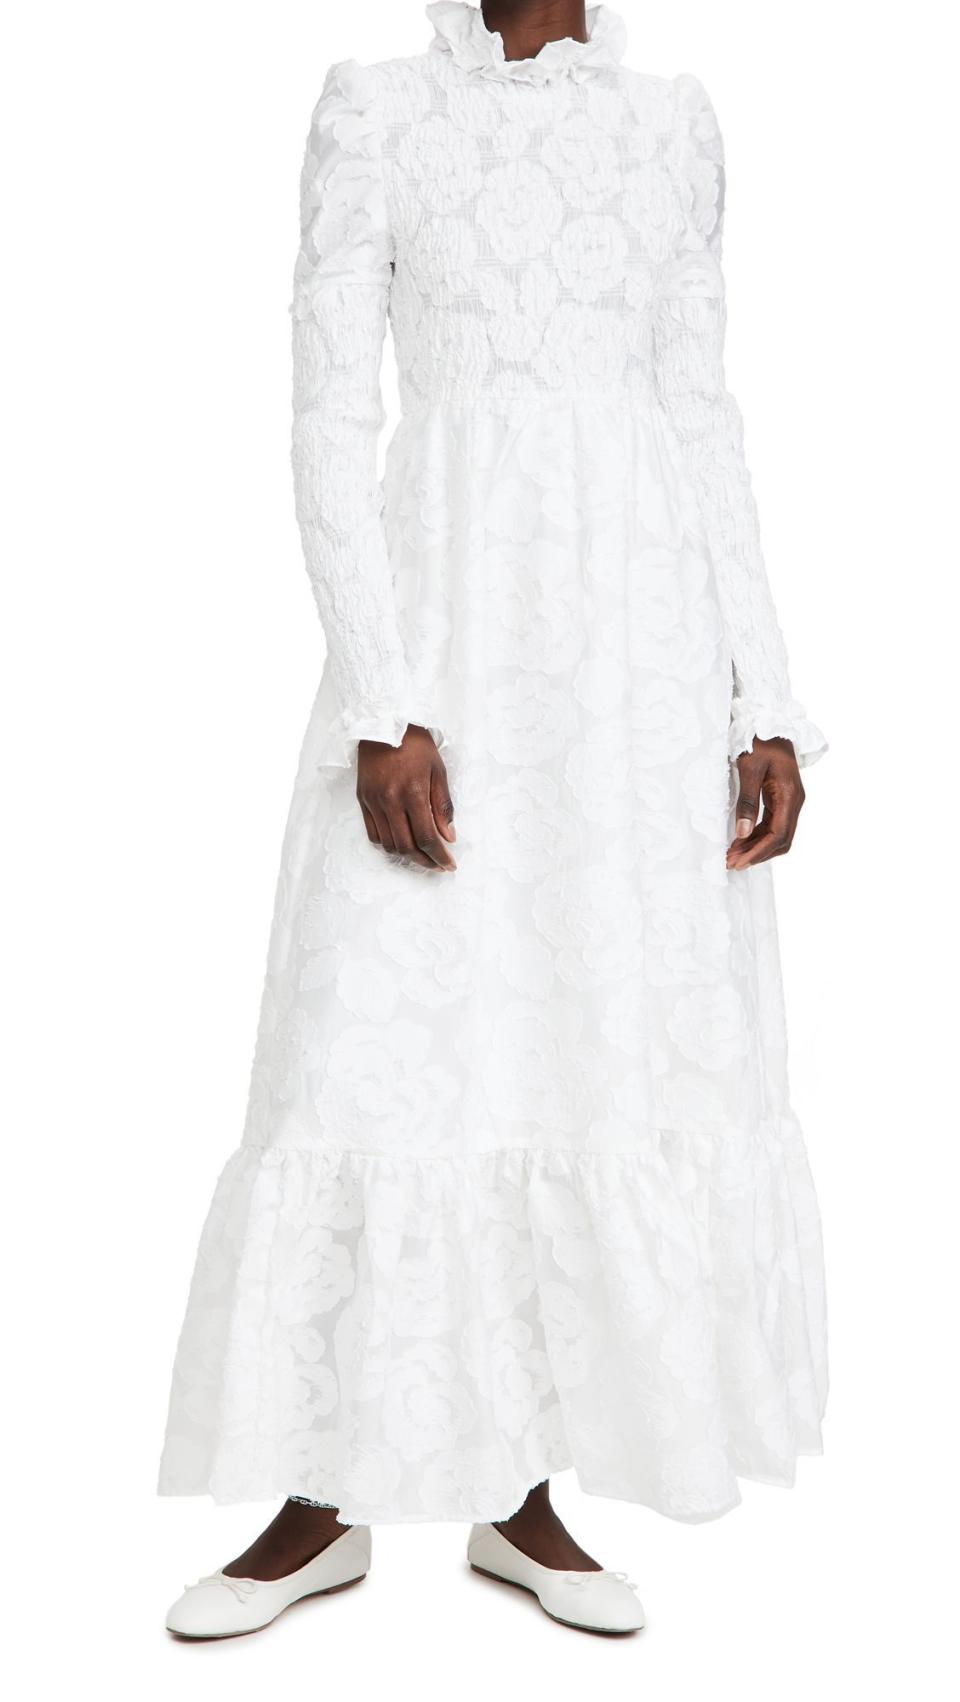 6) Sister Jane Margaret Jacquard Maxi Dress